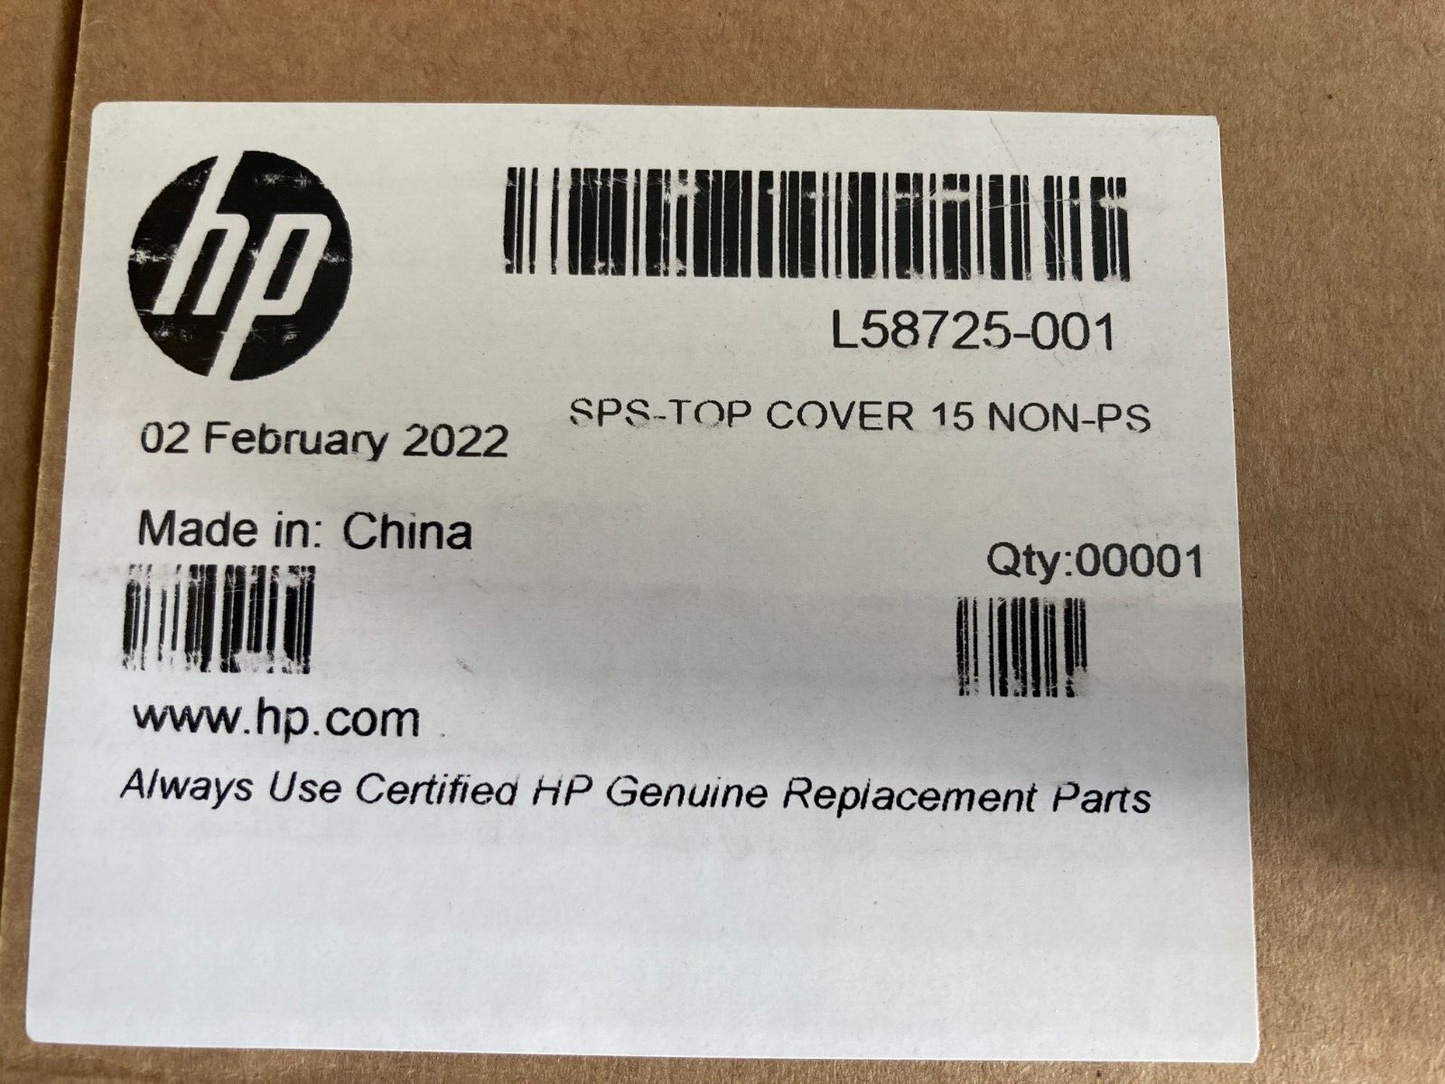 NEW HP L58725-001 TOP COVER PROBOOK 650 G5